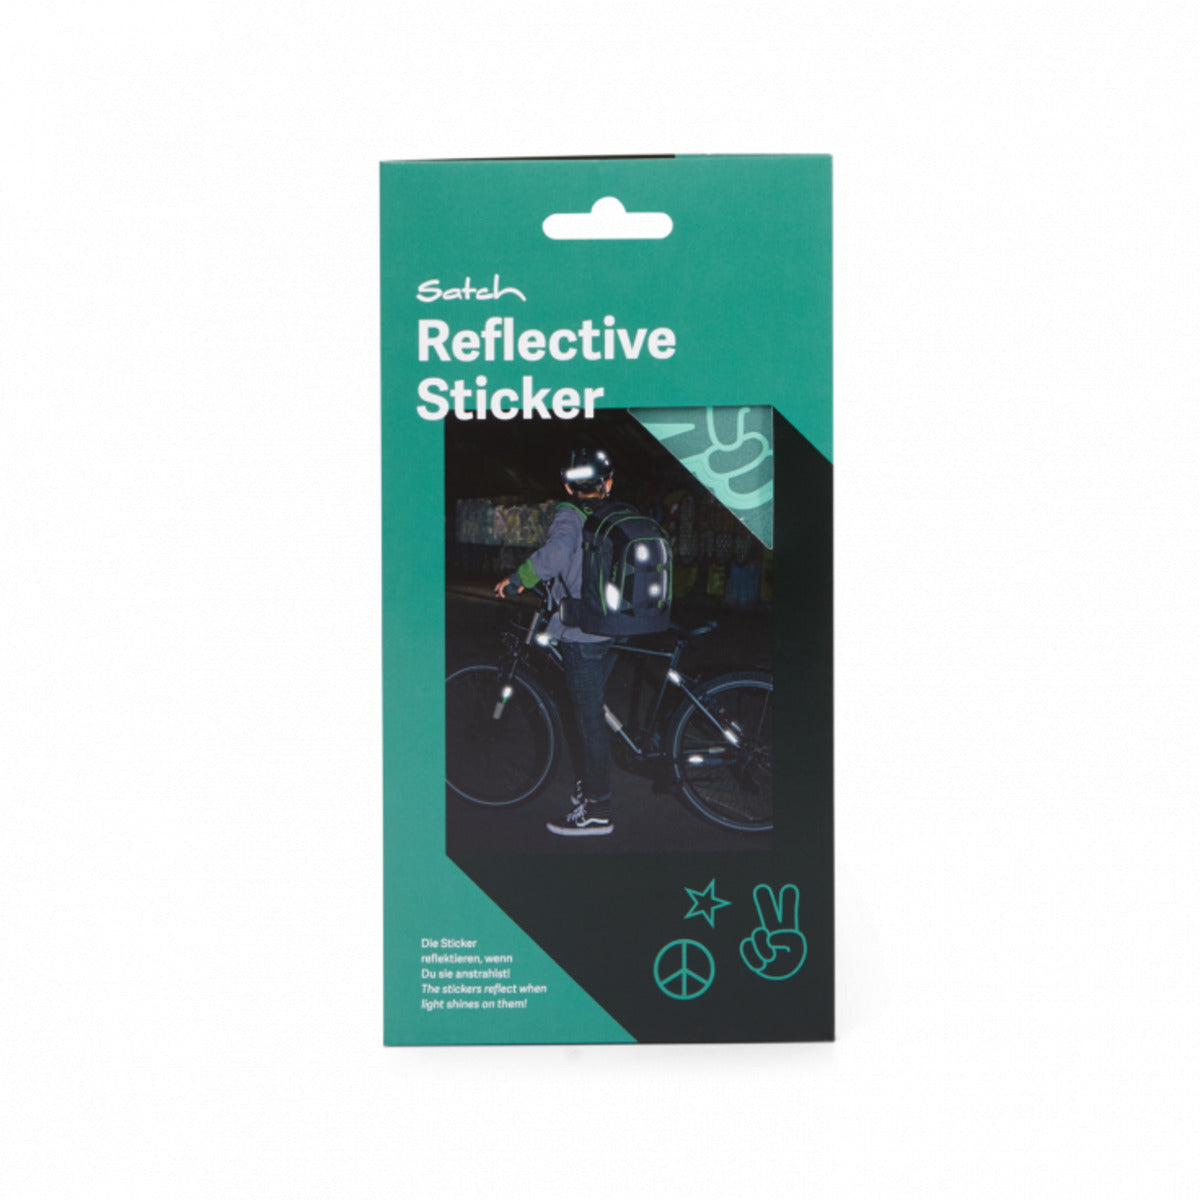 Satch Reflective Sticker mint